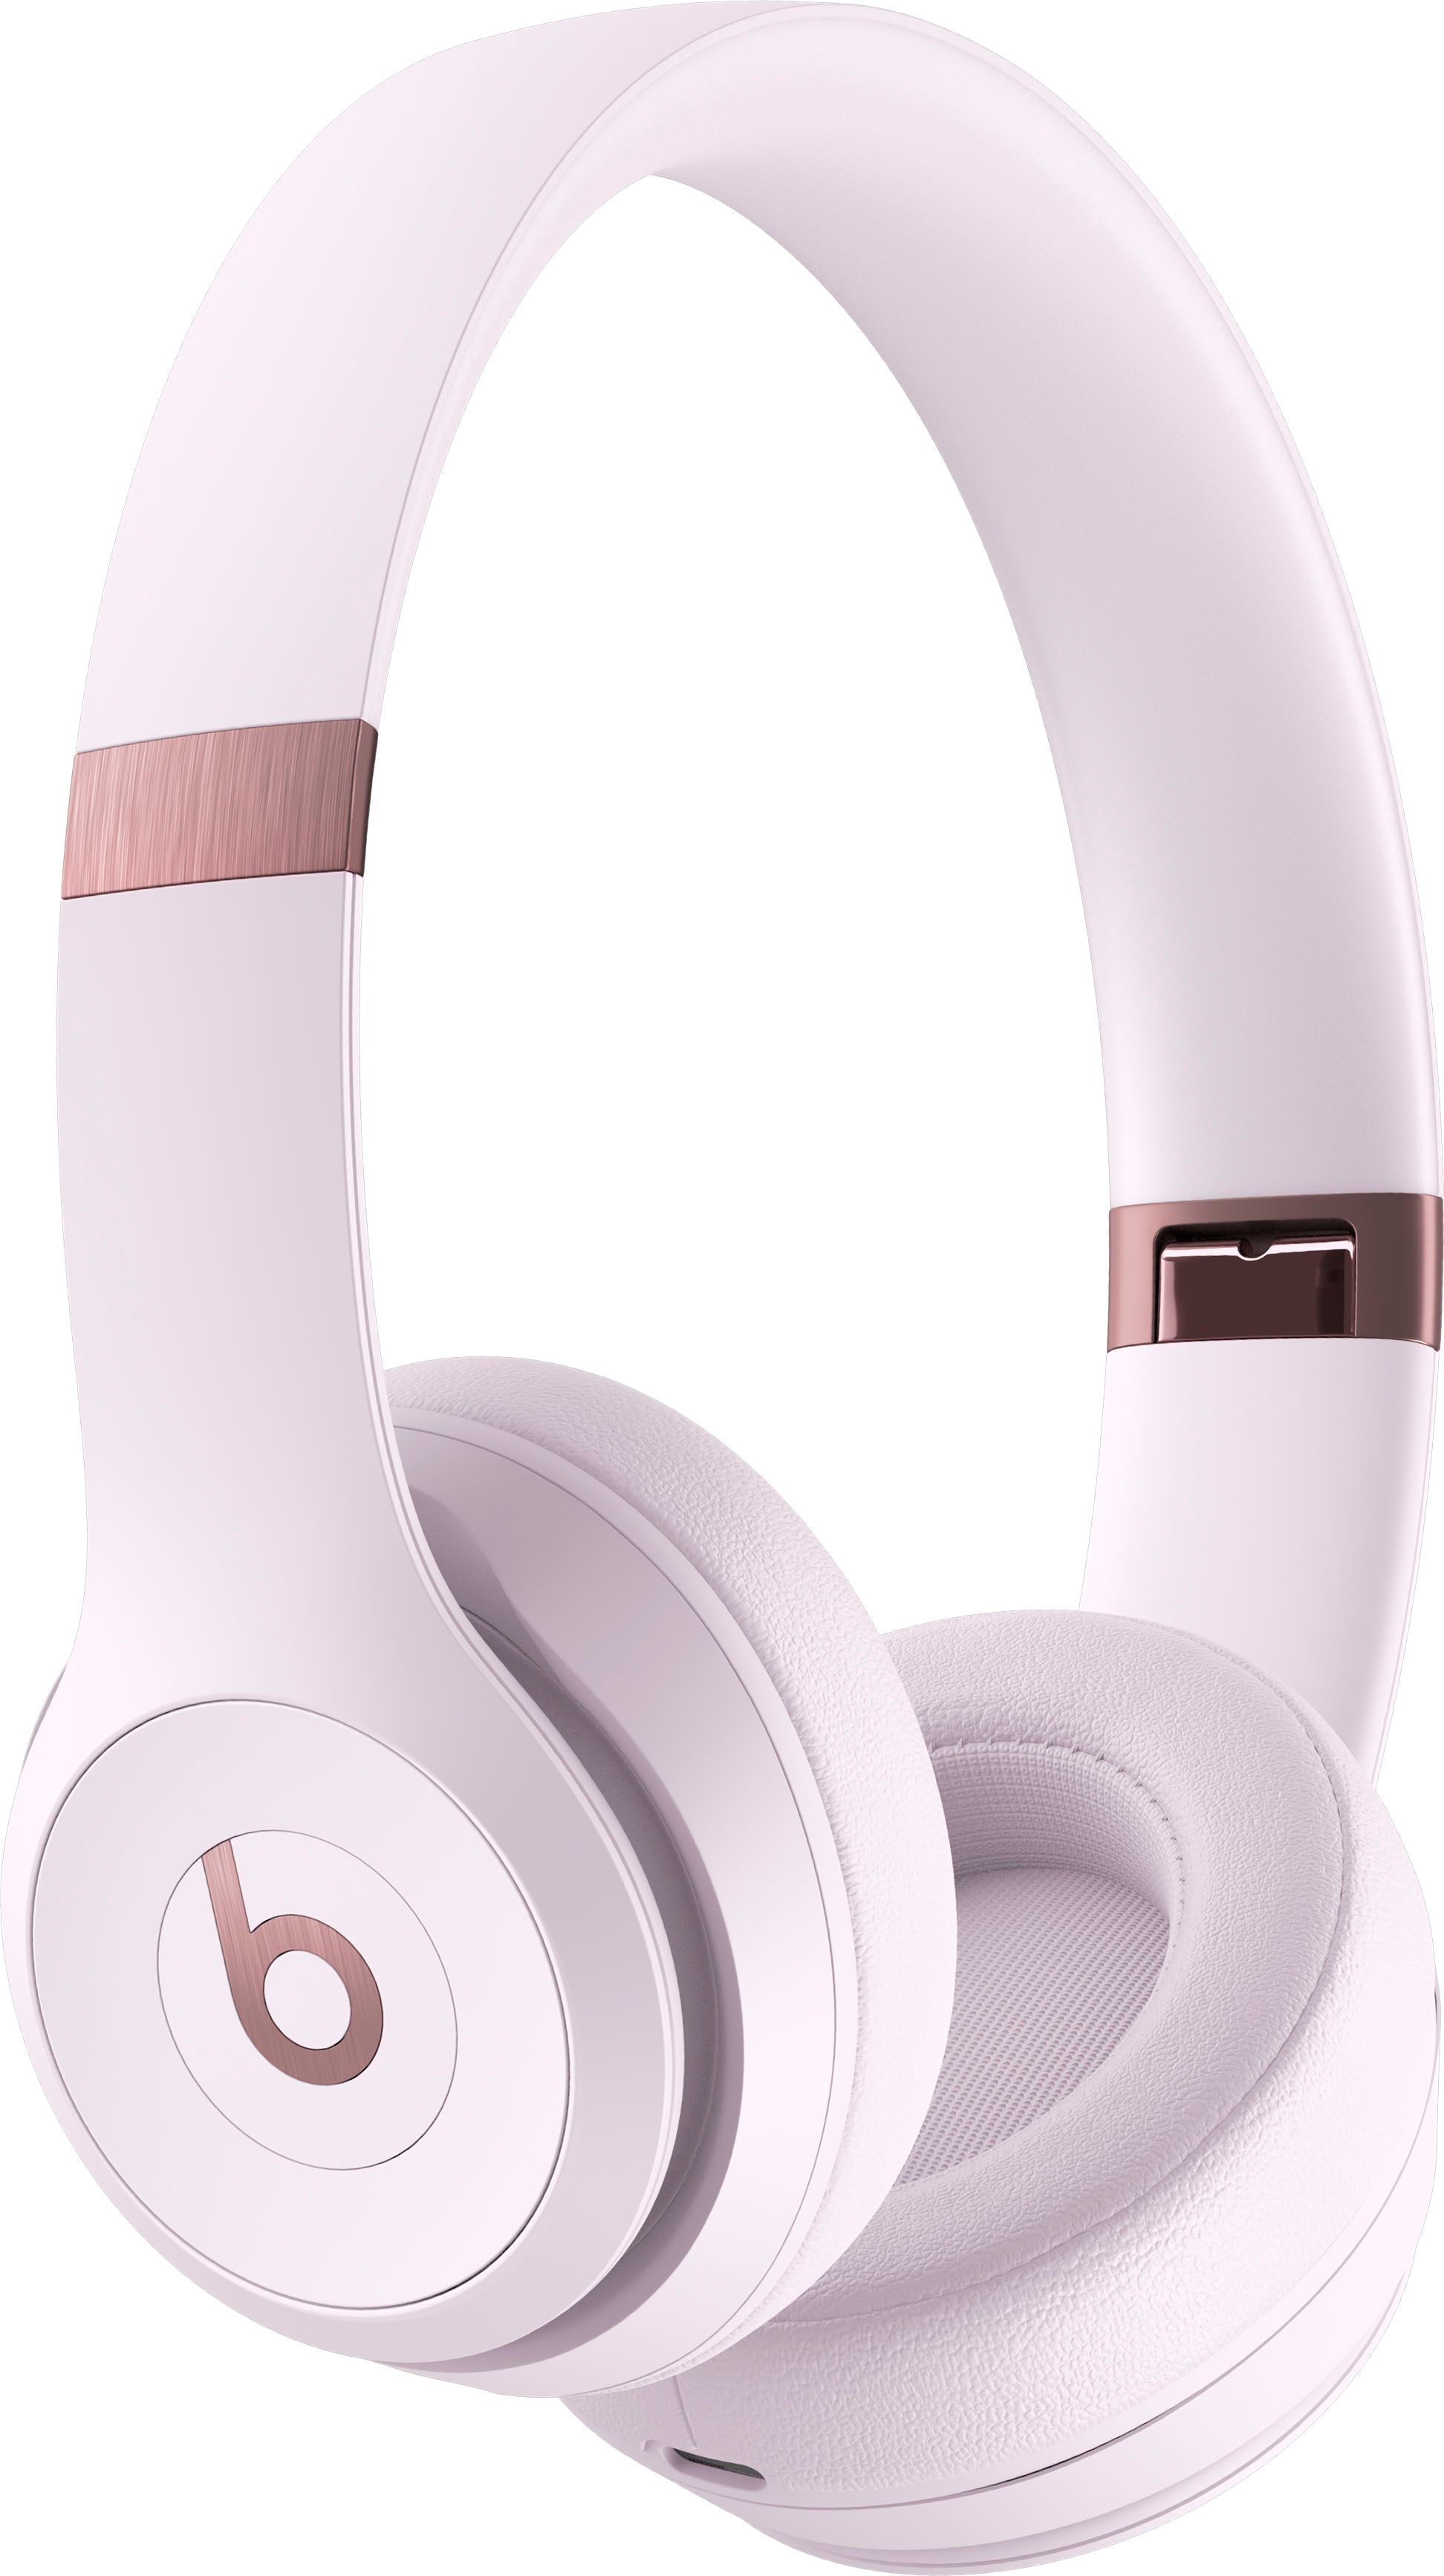 Beats Solo 4 True Wireless On-Ear Headphones Cloud Pink MUW33LL/A - Best Buy | Best Buy U.S.